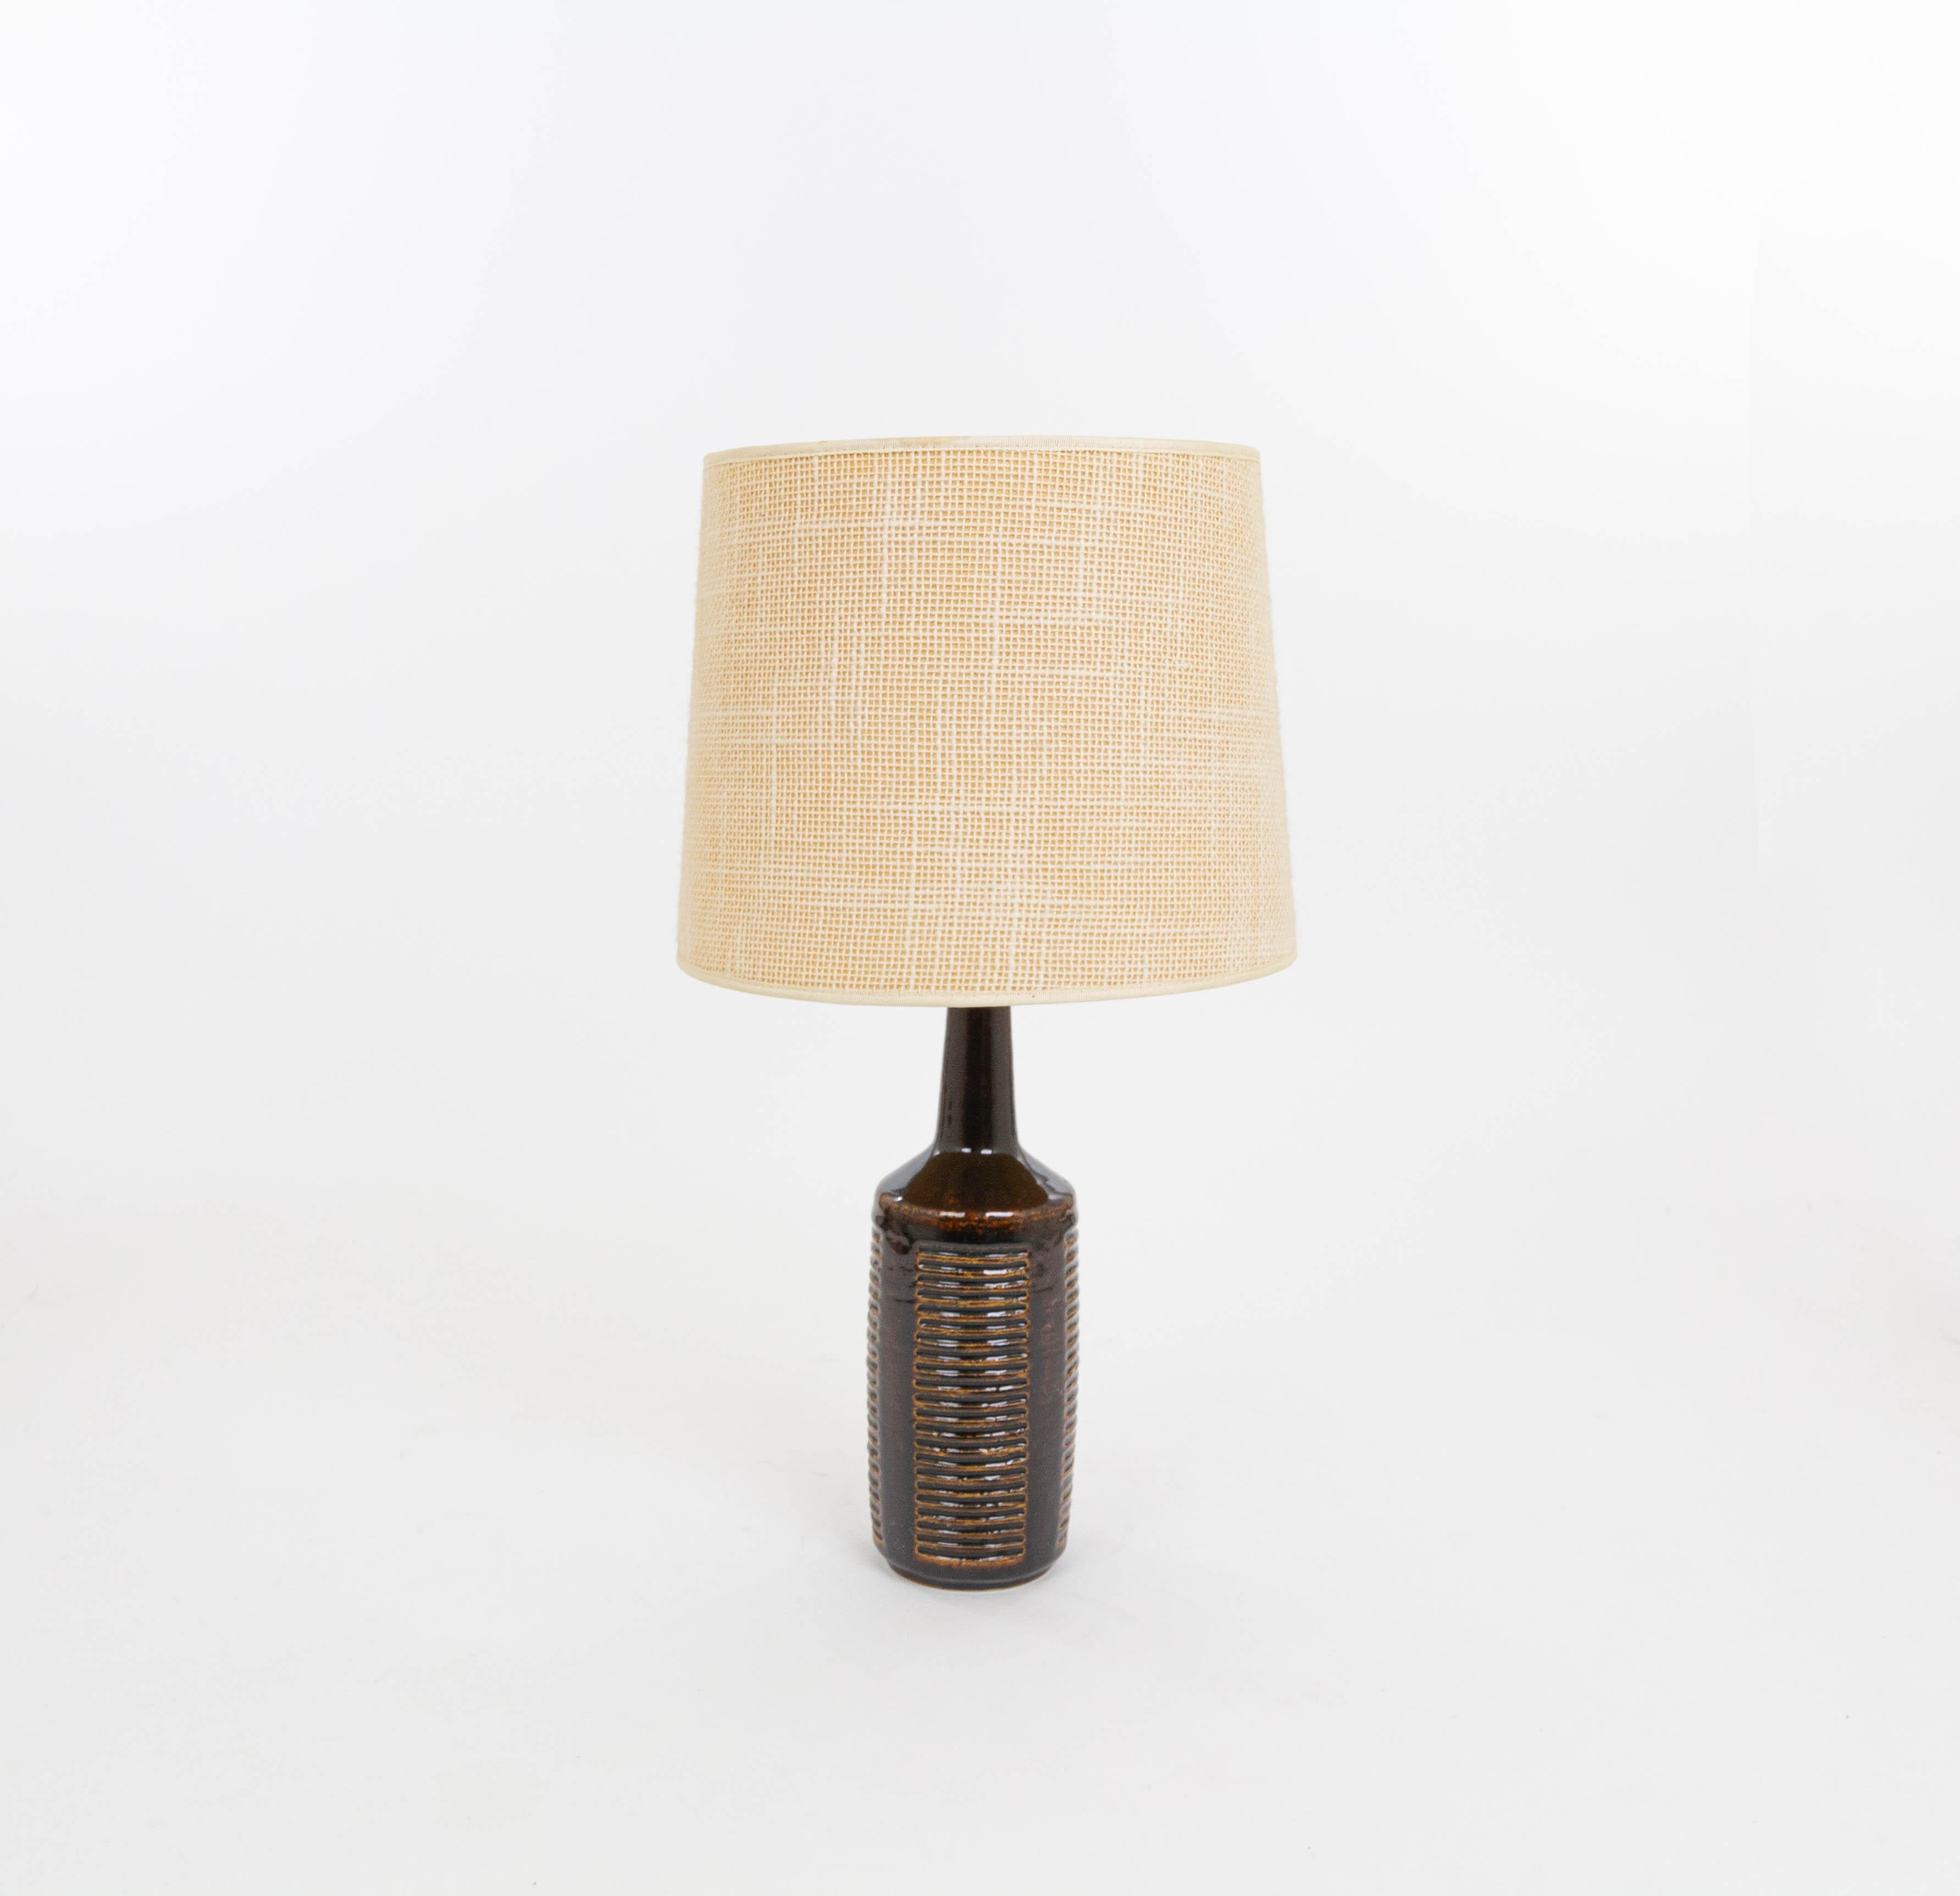 Lampe de table modèle DL/30 réalisée par Annelise et Per Linnemann-Schmidt pour Palshus dans les années 1960. La couleur de la base décorée à la main est brun chocolat foncé. Il présente des motifs géométriques impressionnés.

La lampe est livrée